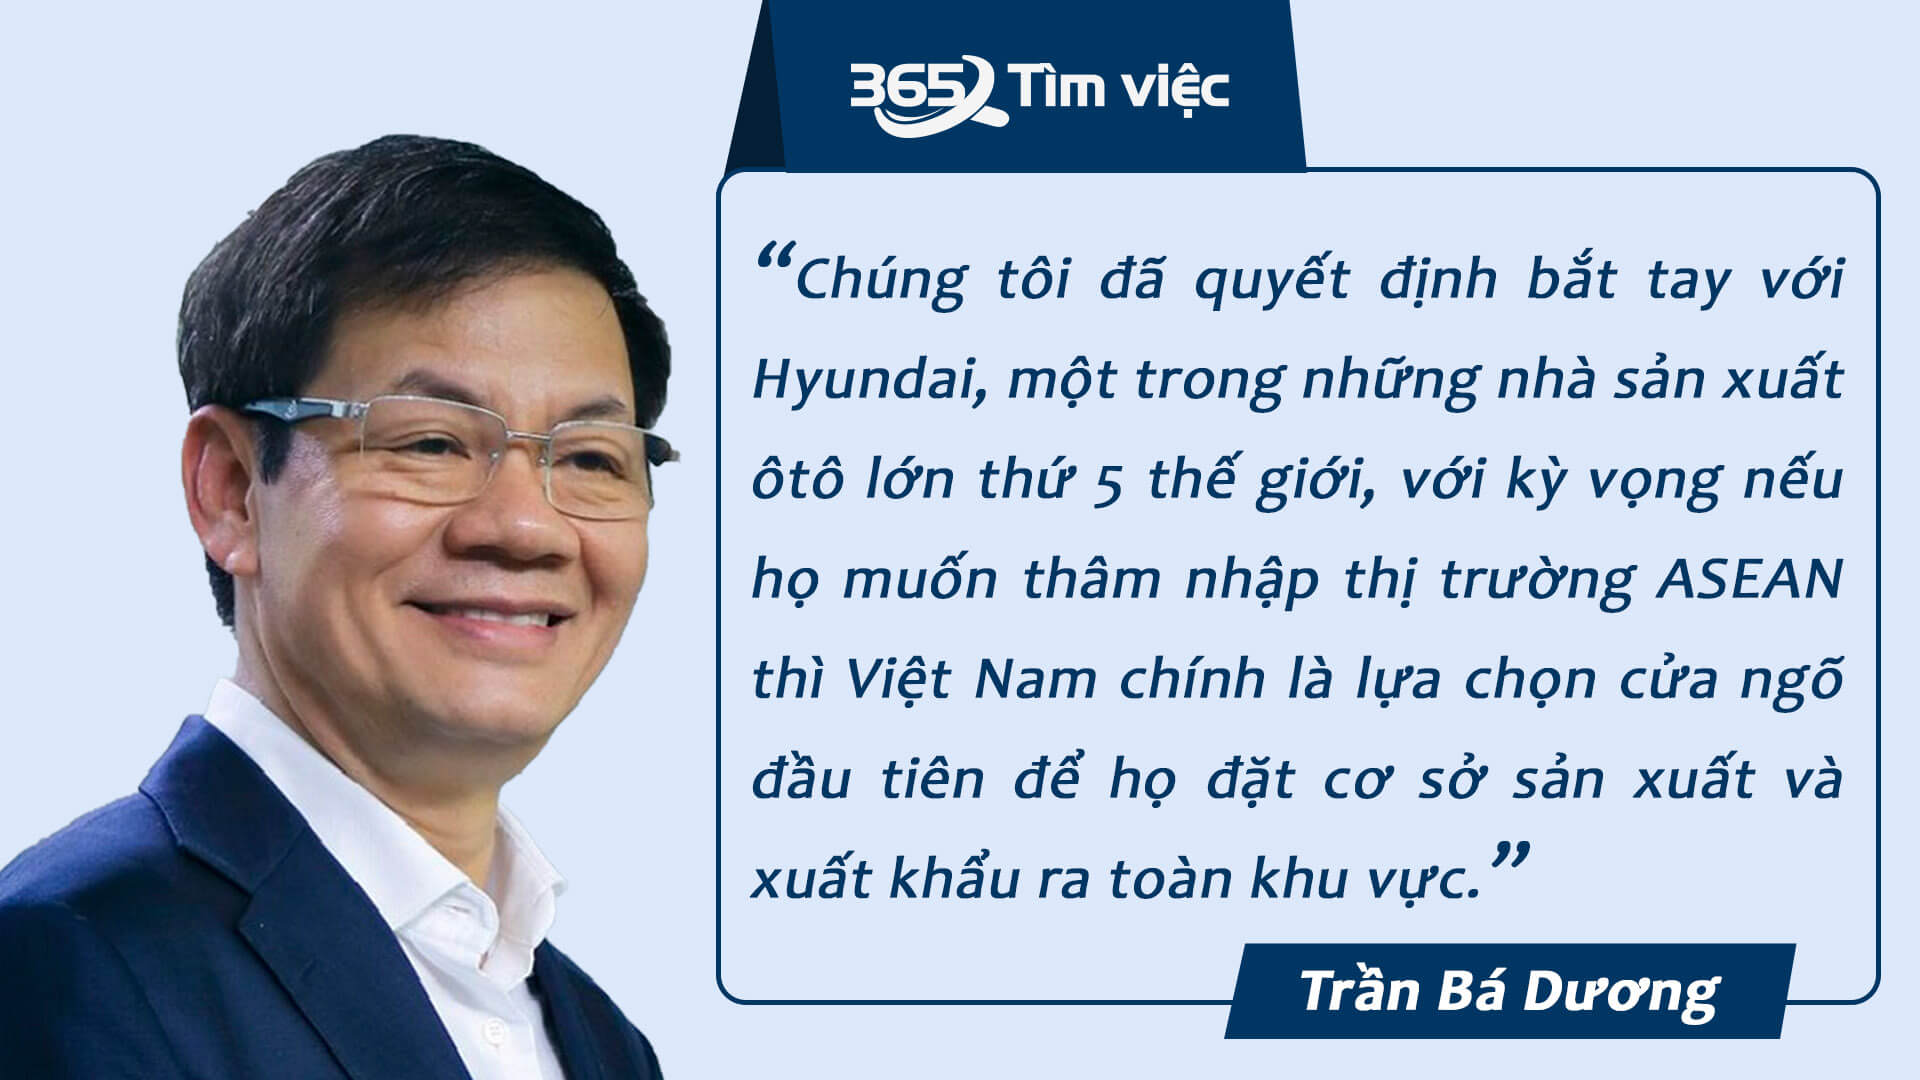 Những ý kiến mà chủ tịch Dương đưa ra đều đem đến một góc nhìn mới lạ